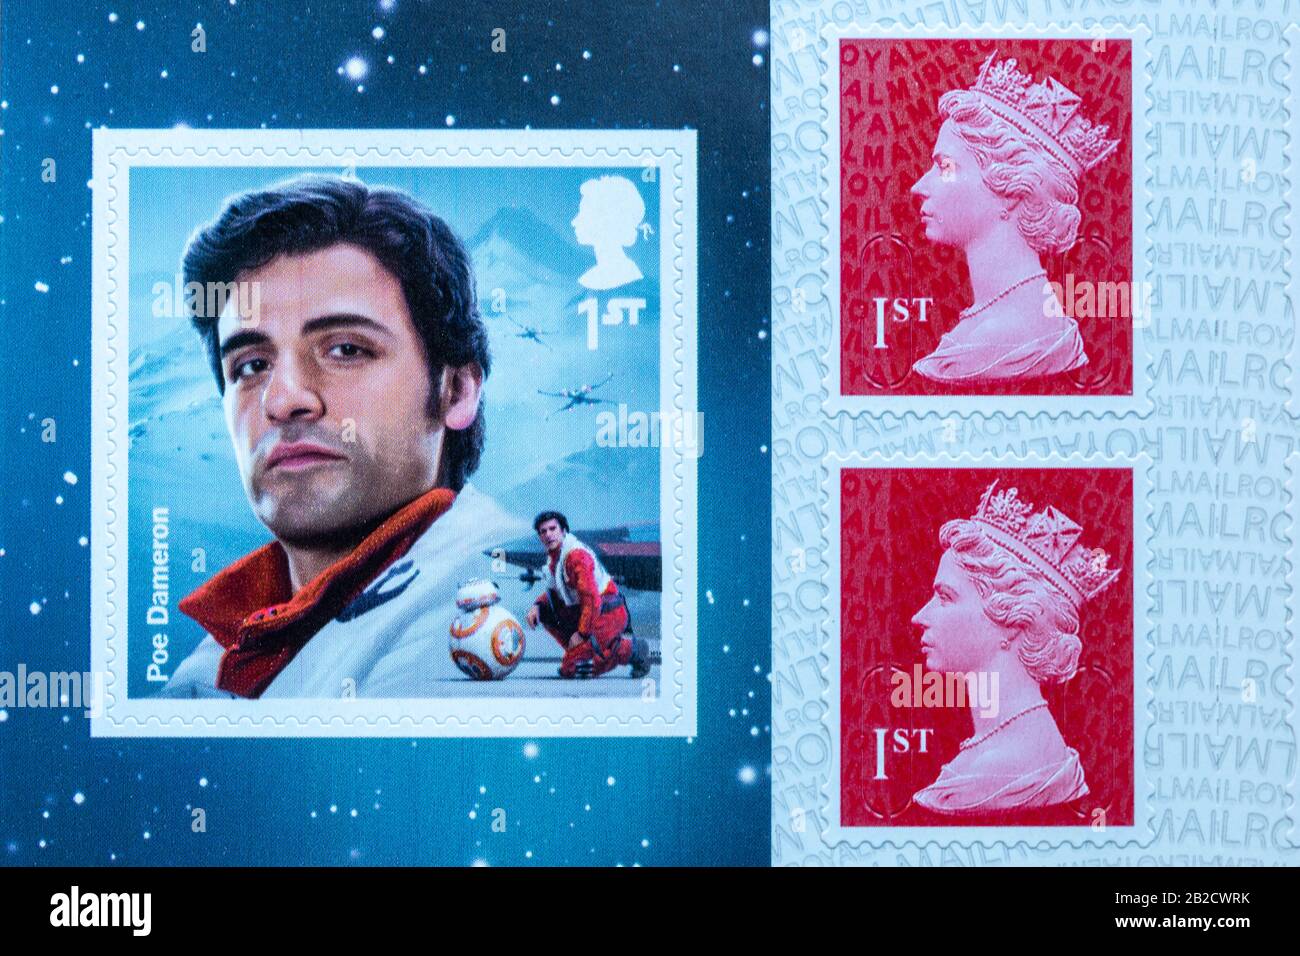 Livre de timbres-poste vendus par Royal Mail, Royaume-Uni, édition spéciale Star Wars collectables Banque D'Images